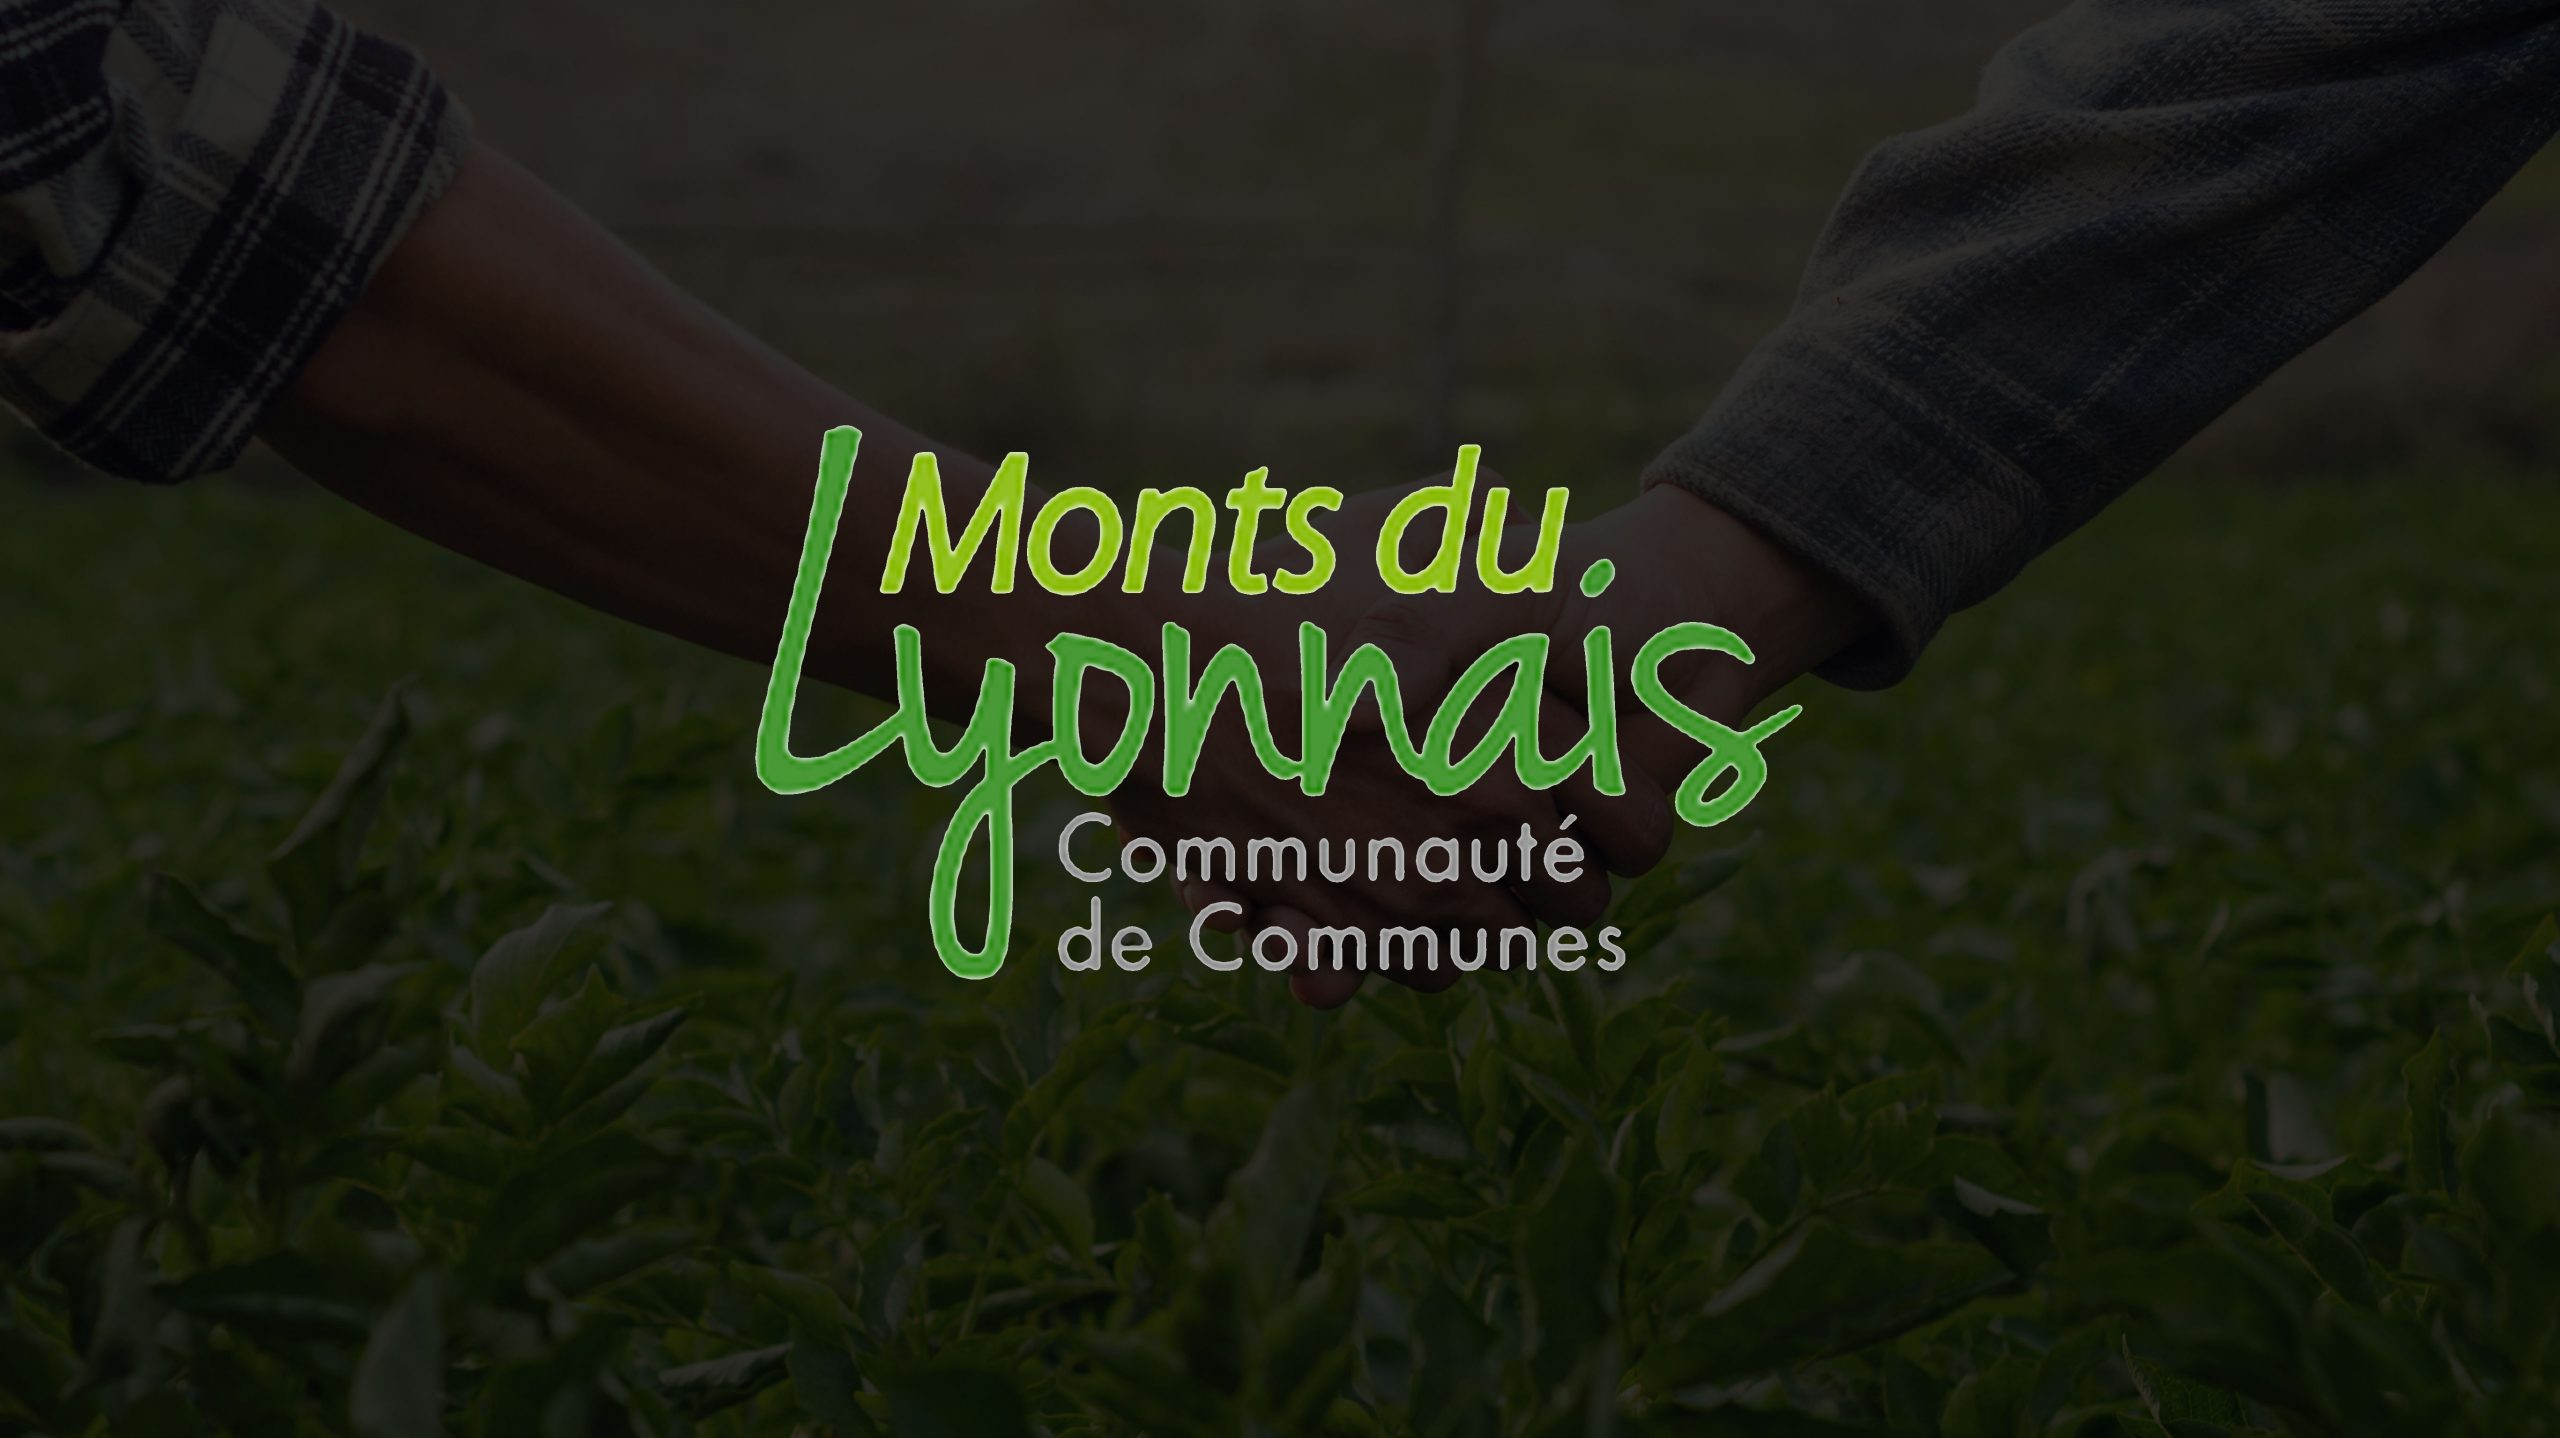 COMMUNAUTÉ DE COMMUNES DES MONTS DU LYONNAIS